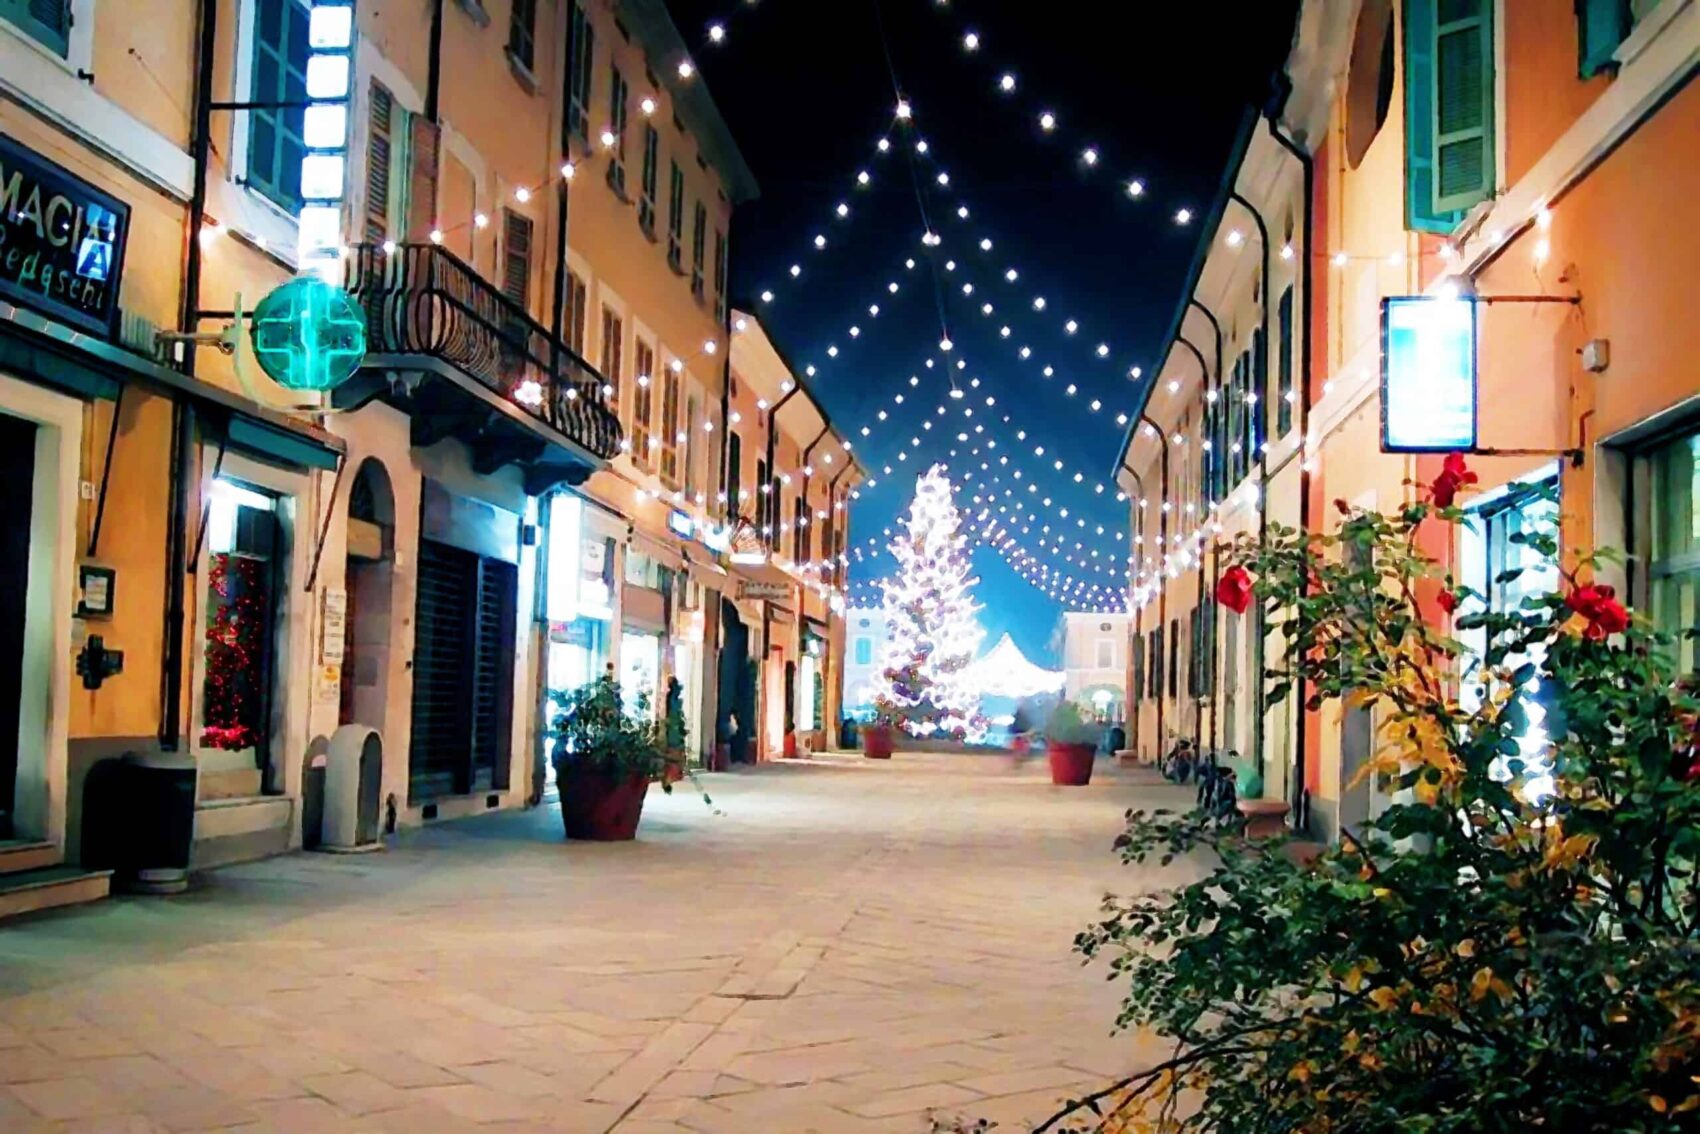 Weihnachtlich dekorierte Altstadt in Italien